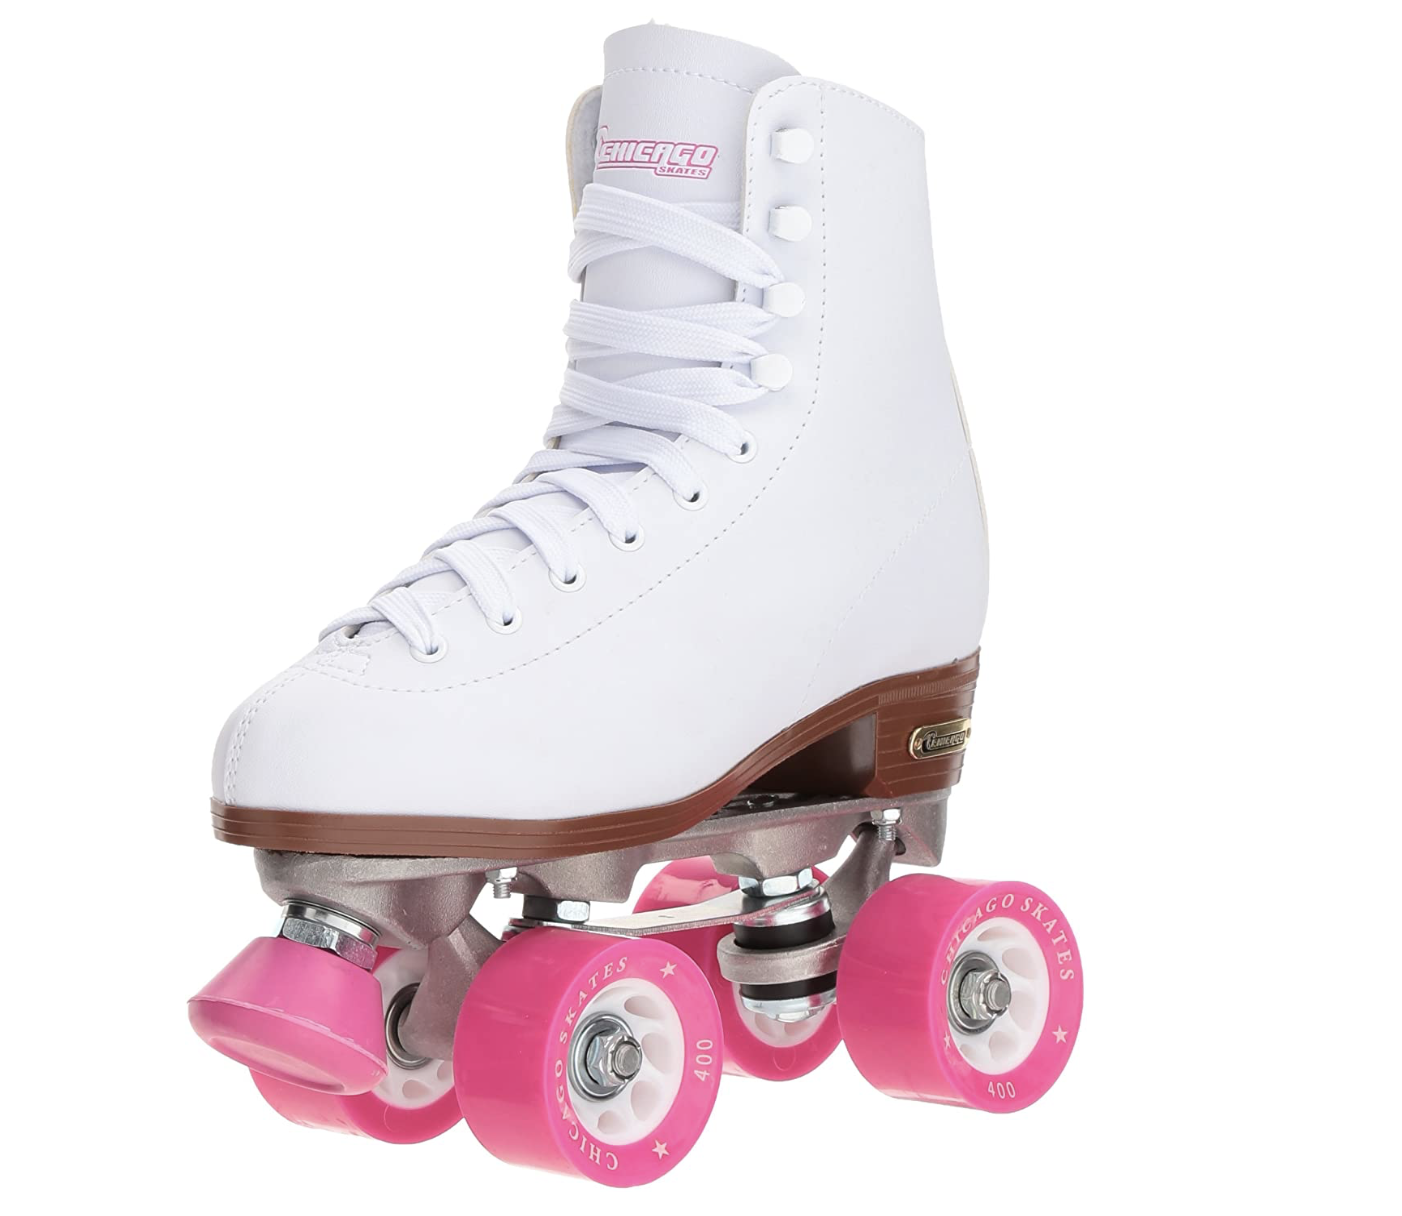 Universal Roller Skates Brakes Pads Adult Inline Roller Skate Shoes Skates S9F2 